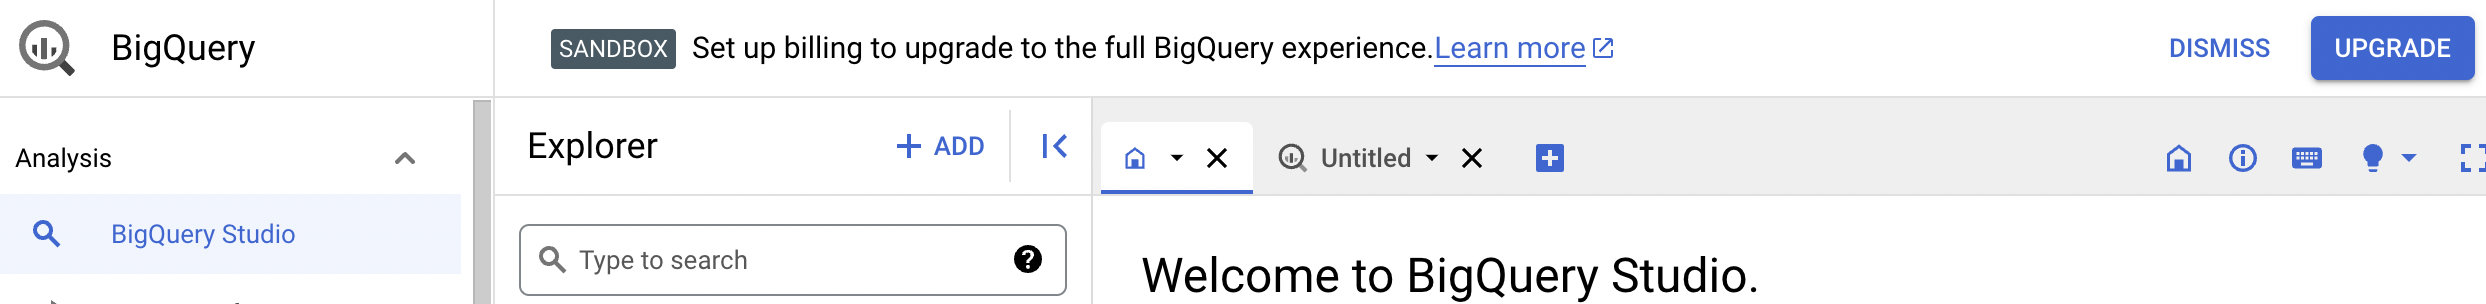 确认通知提供了升级到完整 BigQuery 体验的选项。